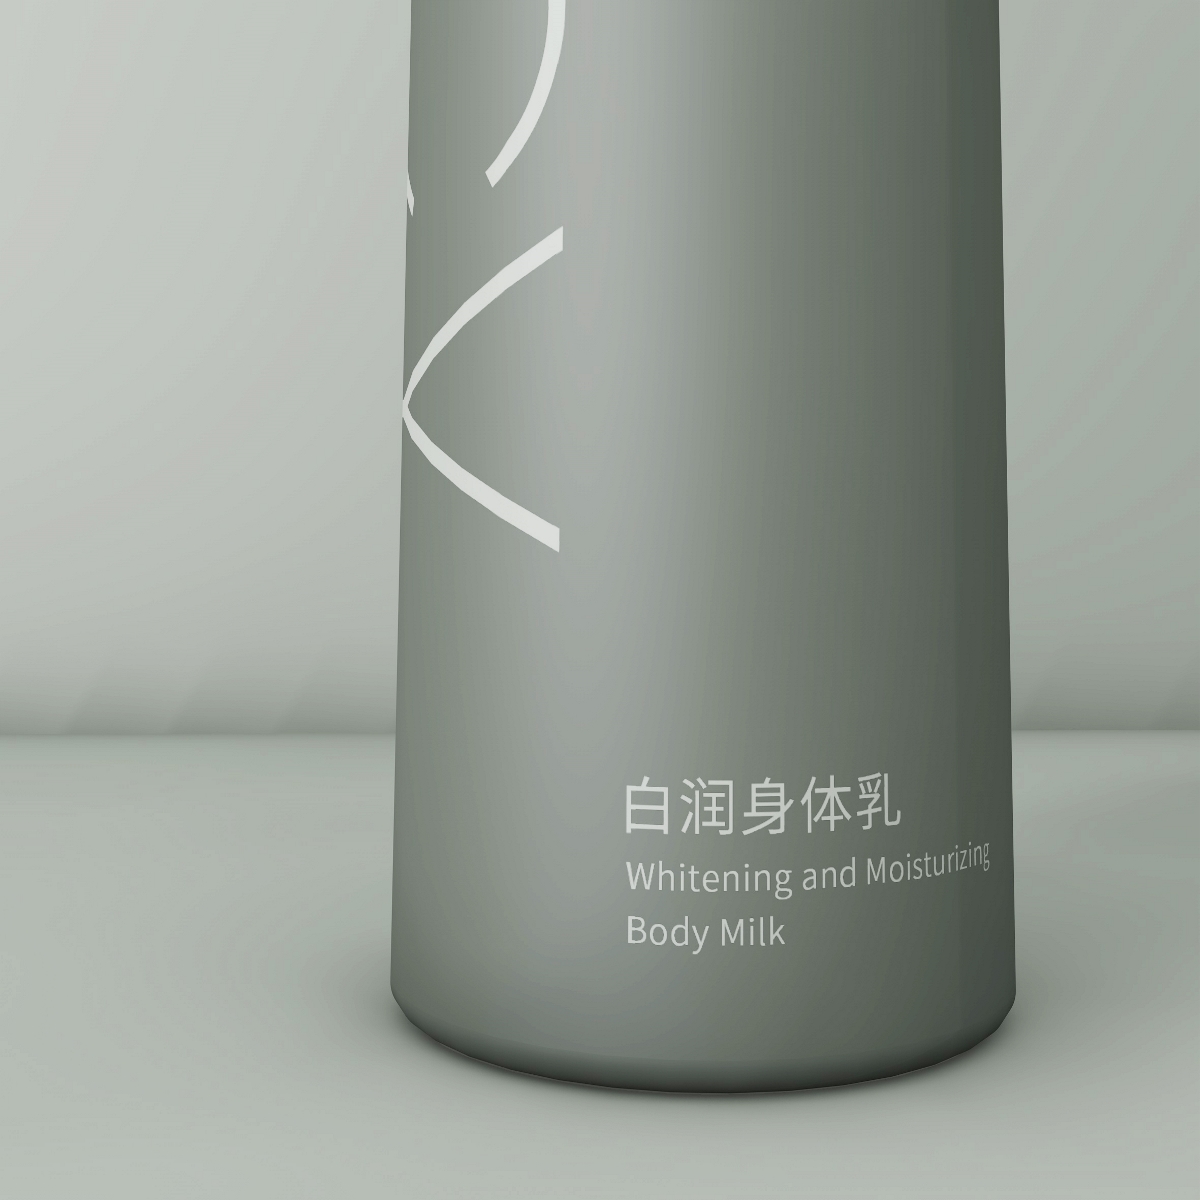 塑料瓶子包装设计 洗发水沐浴露 标签设计 